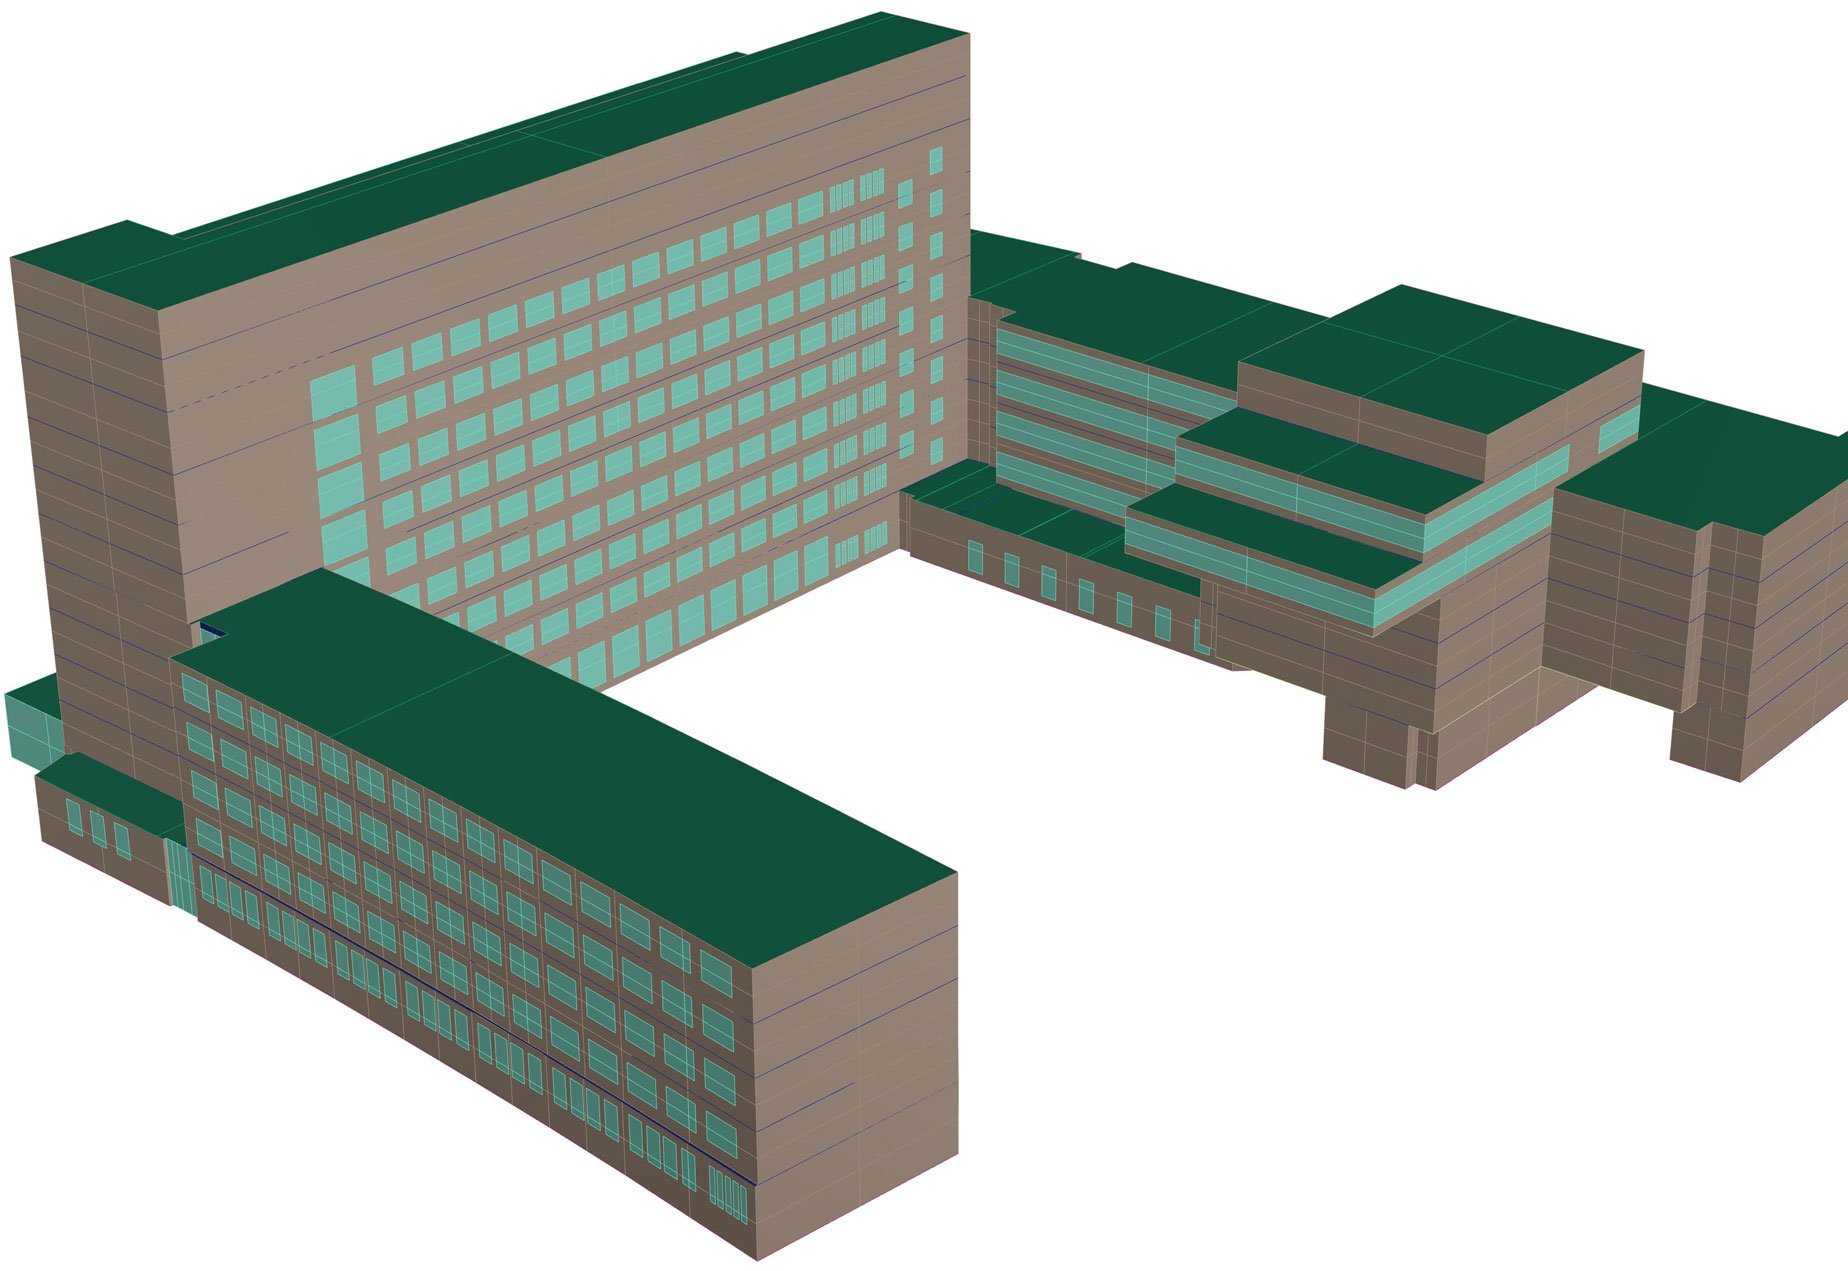 Rekonstruktion der thermischen Gebäudehülle als 3D-Flächenmodell.